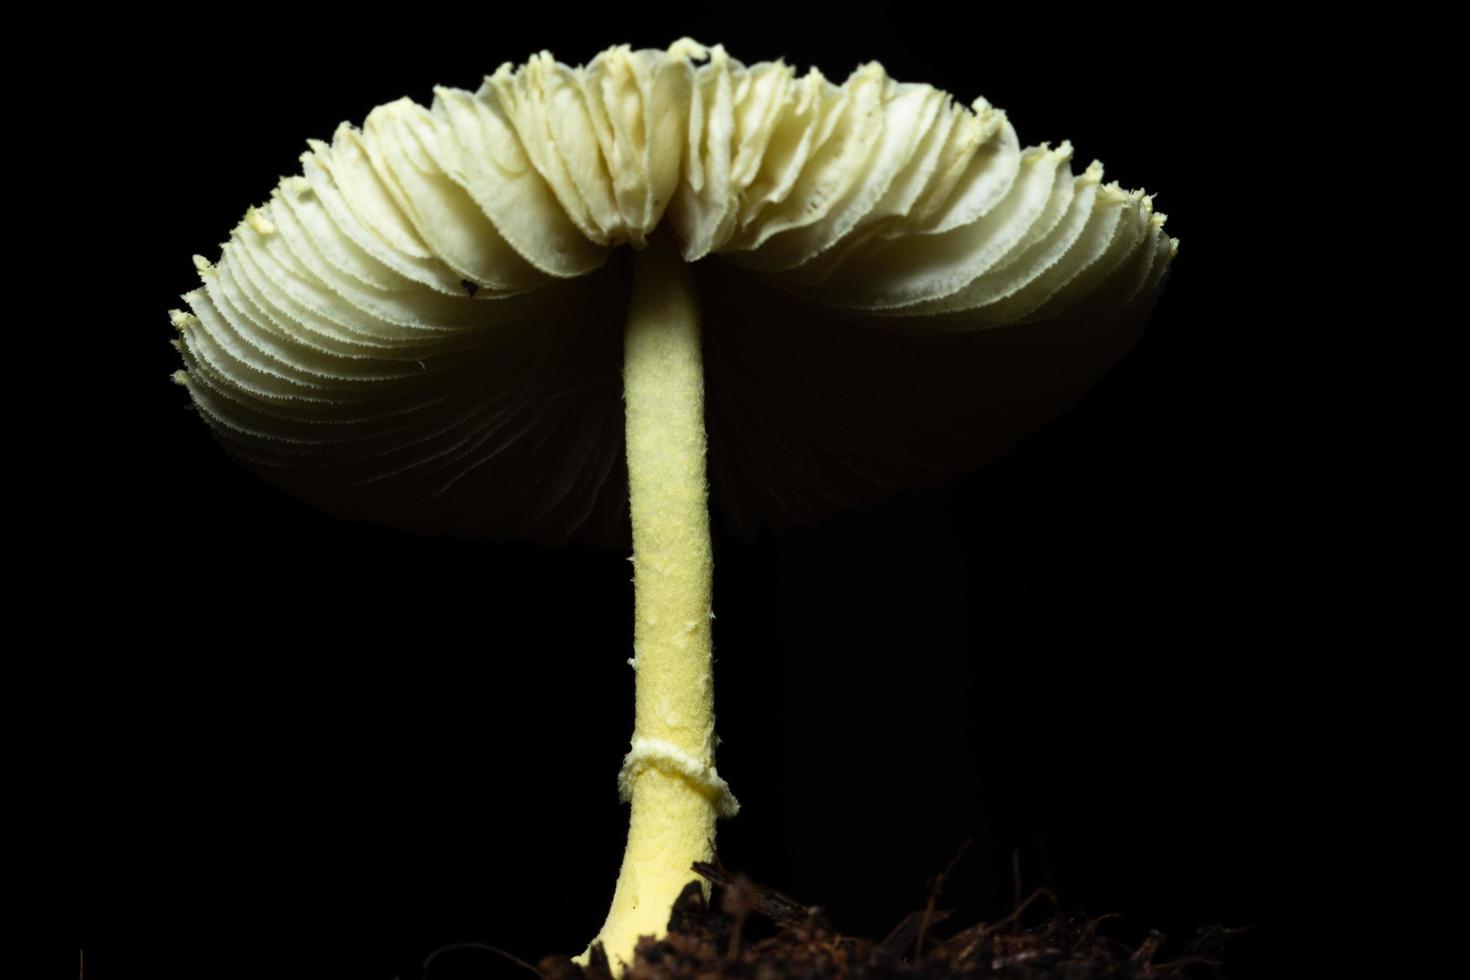 Pilz auf schwarzem Hintergrund foto